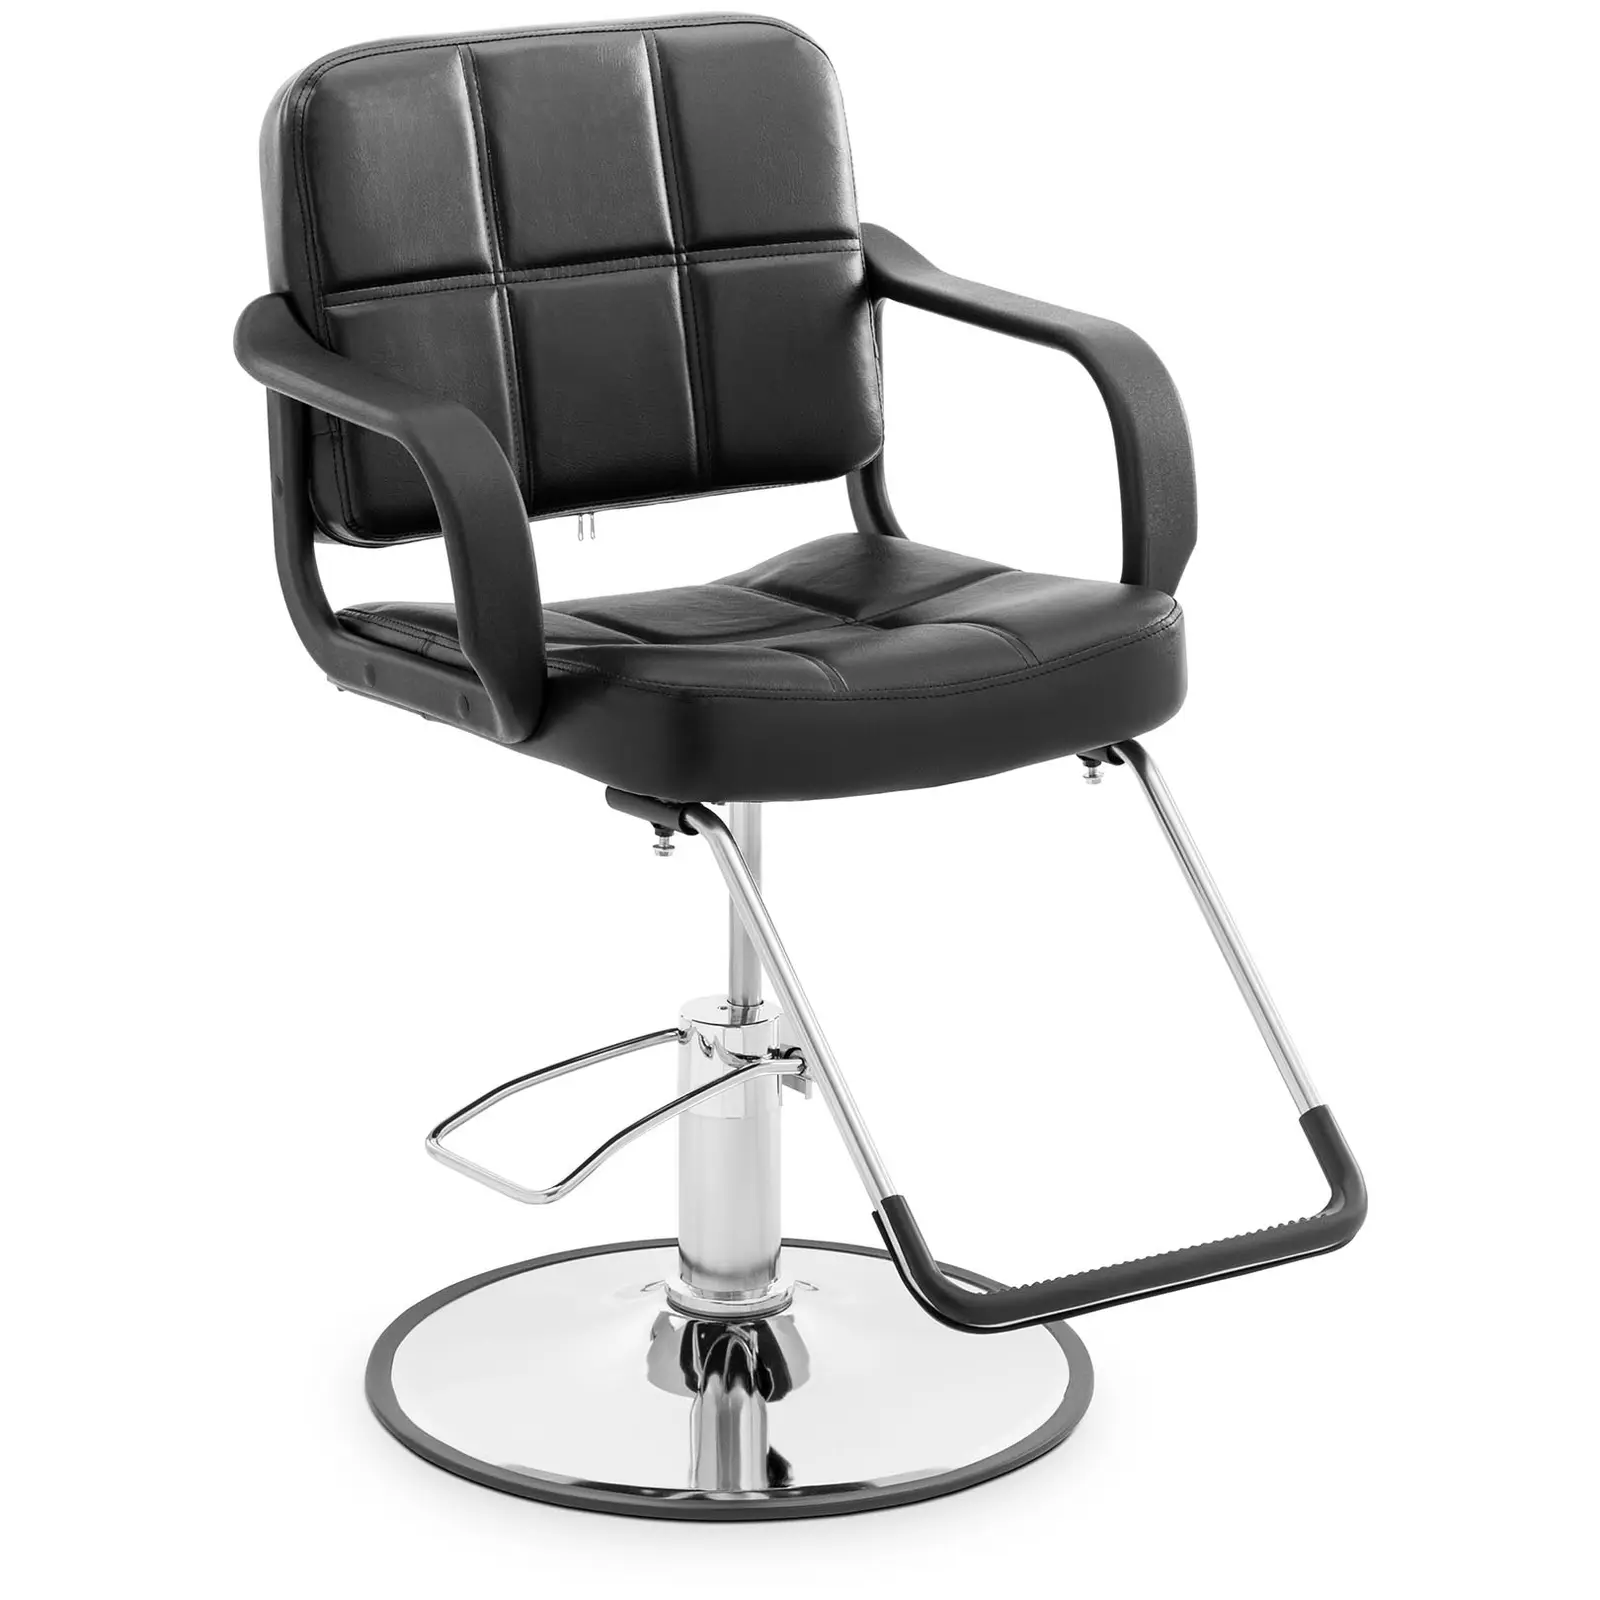 Salon chair - Footrest - 50 - 64 cm - 170 kg - black